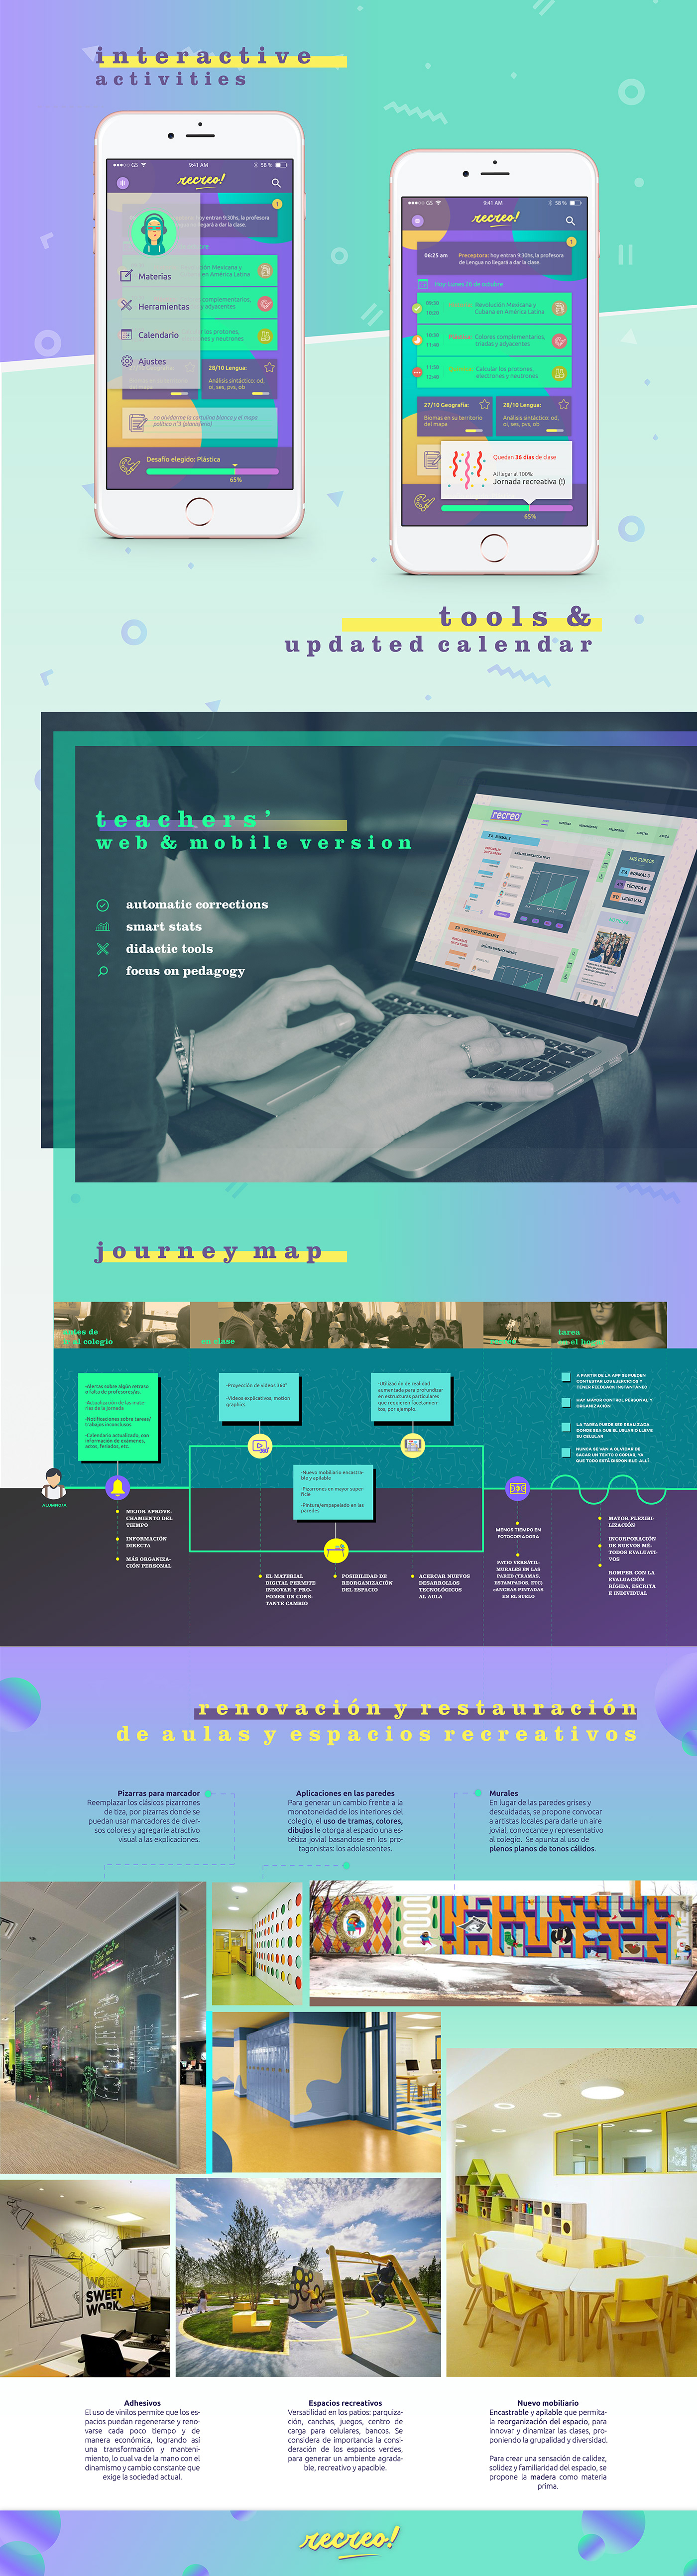 ux design Education argentina Platform digital app UI journey map social design